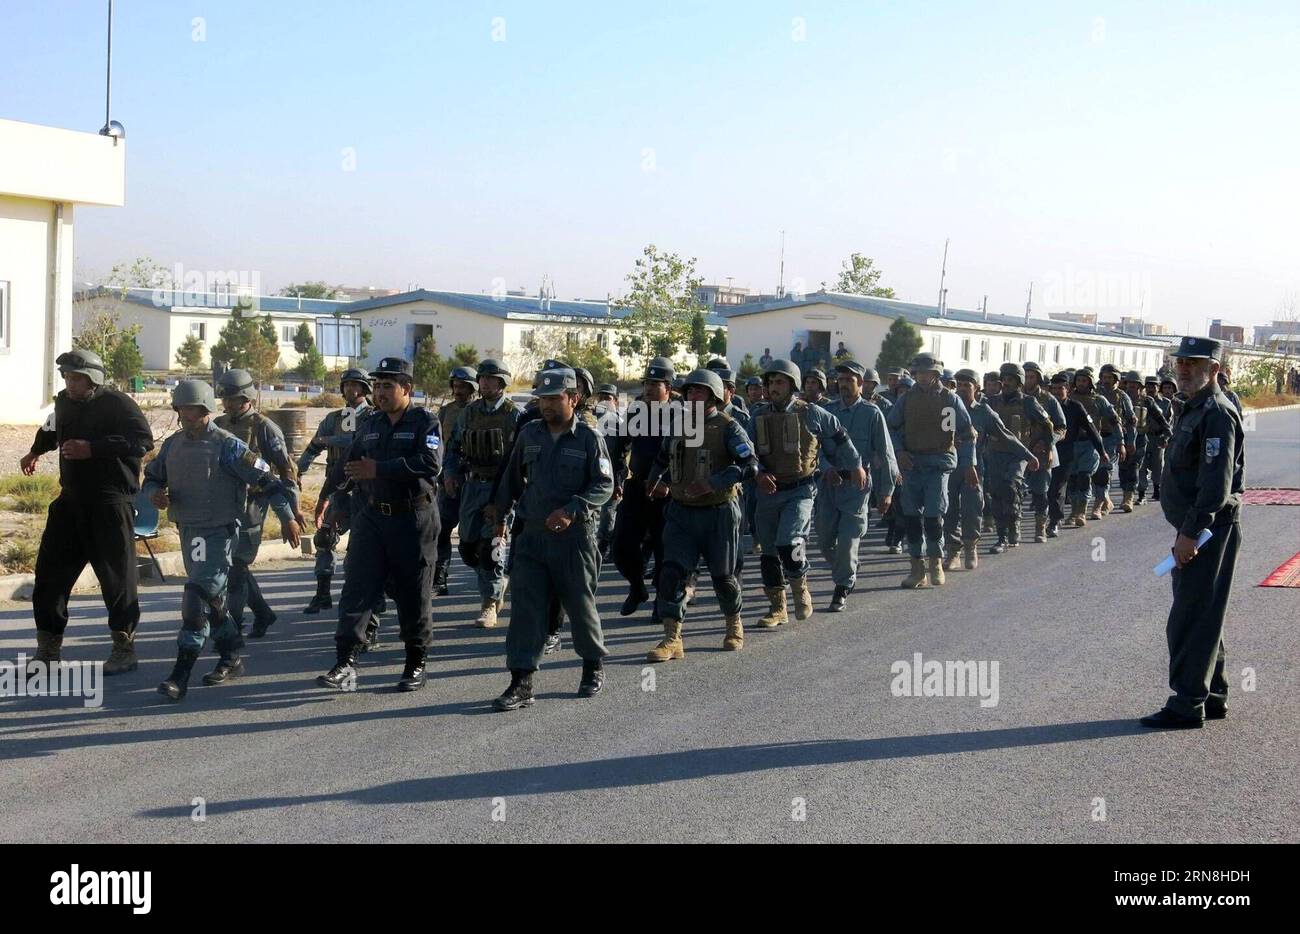 (151025) - BALKH, 25 ottobre 2015 -- i poliziotti afghani marcia durante un esercizio a Mazar-e-Sharif, capitale della provincia settentrionale di Balkh, Afghanistan, 25 ottobre 2015. Le autorità afghane hanno recentemente accelerato la formazione delle forze di sicurezza, dal 1° gennaio di quest'anno la polizia e l'esercito del paese hanno assunto tutte le accuse di sicurezza dalle forze NATO e statunitensi. ) AFGHANISTAN-BALKH-POLIZIOTTI-FORMAZIONE Azorda PUBLICATIONxNOTxINxCHN Balkh OCT 25 2015 poliziotti afghani marciano durante l'ESERCITAZIONE a Mazar e Sharif capitale della provincia settentrionale di Balkh in Afghanistan OCT 25 2015 le autorità afghane hanno velocità Foto Stock